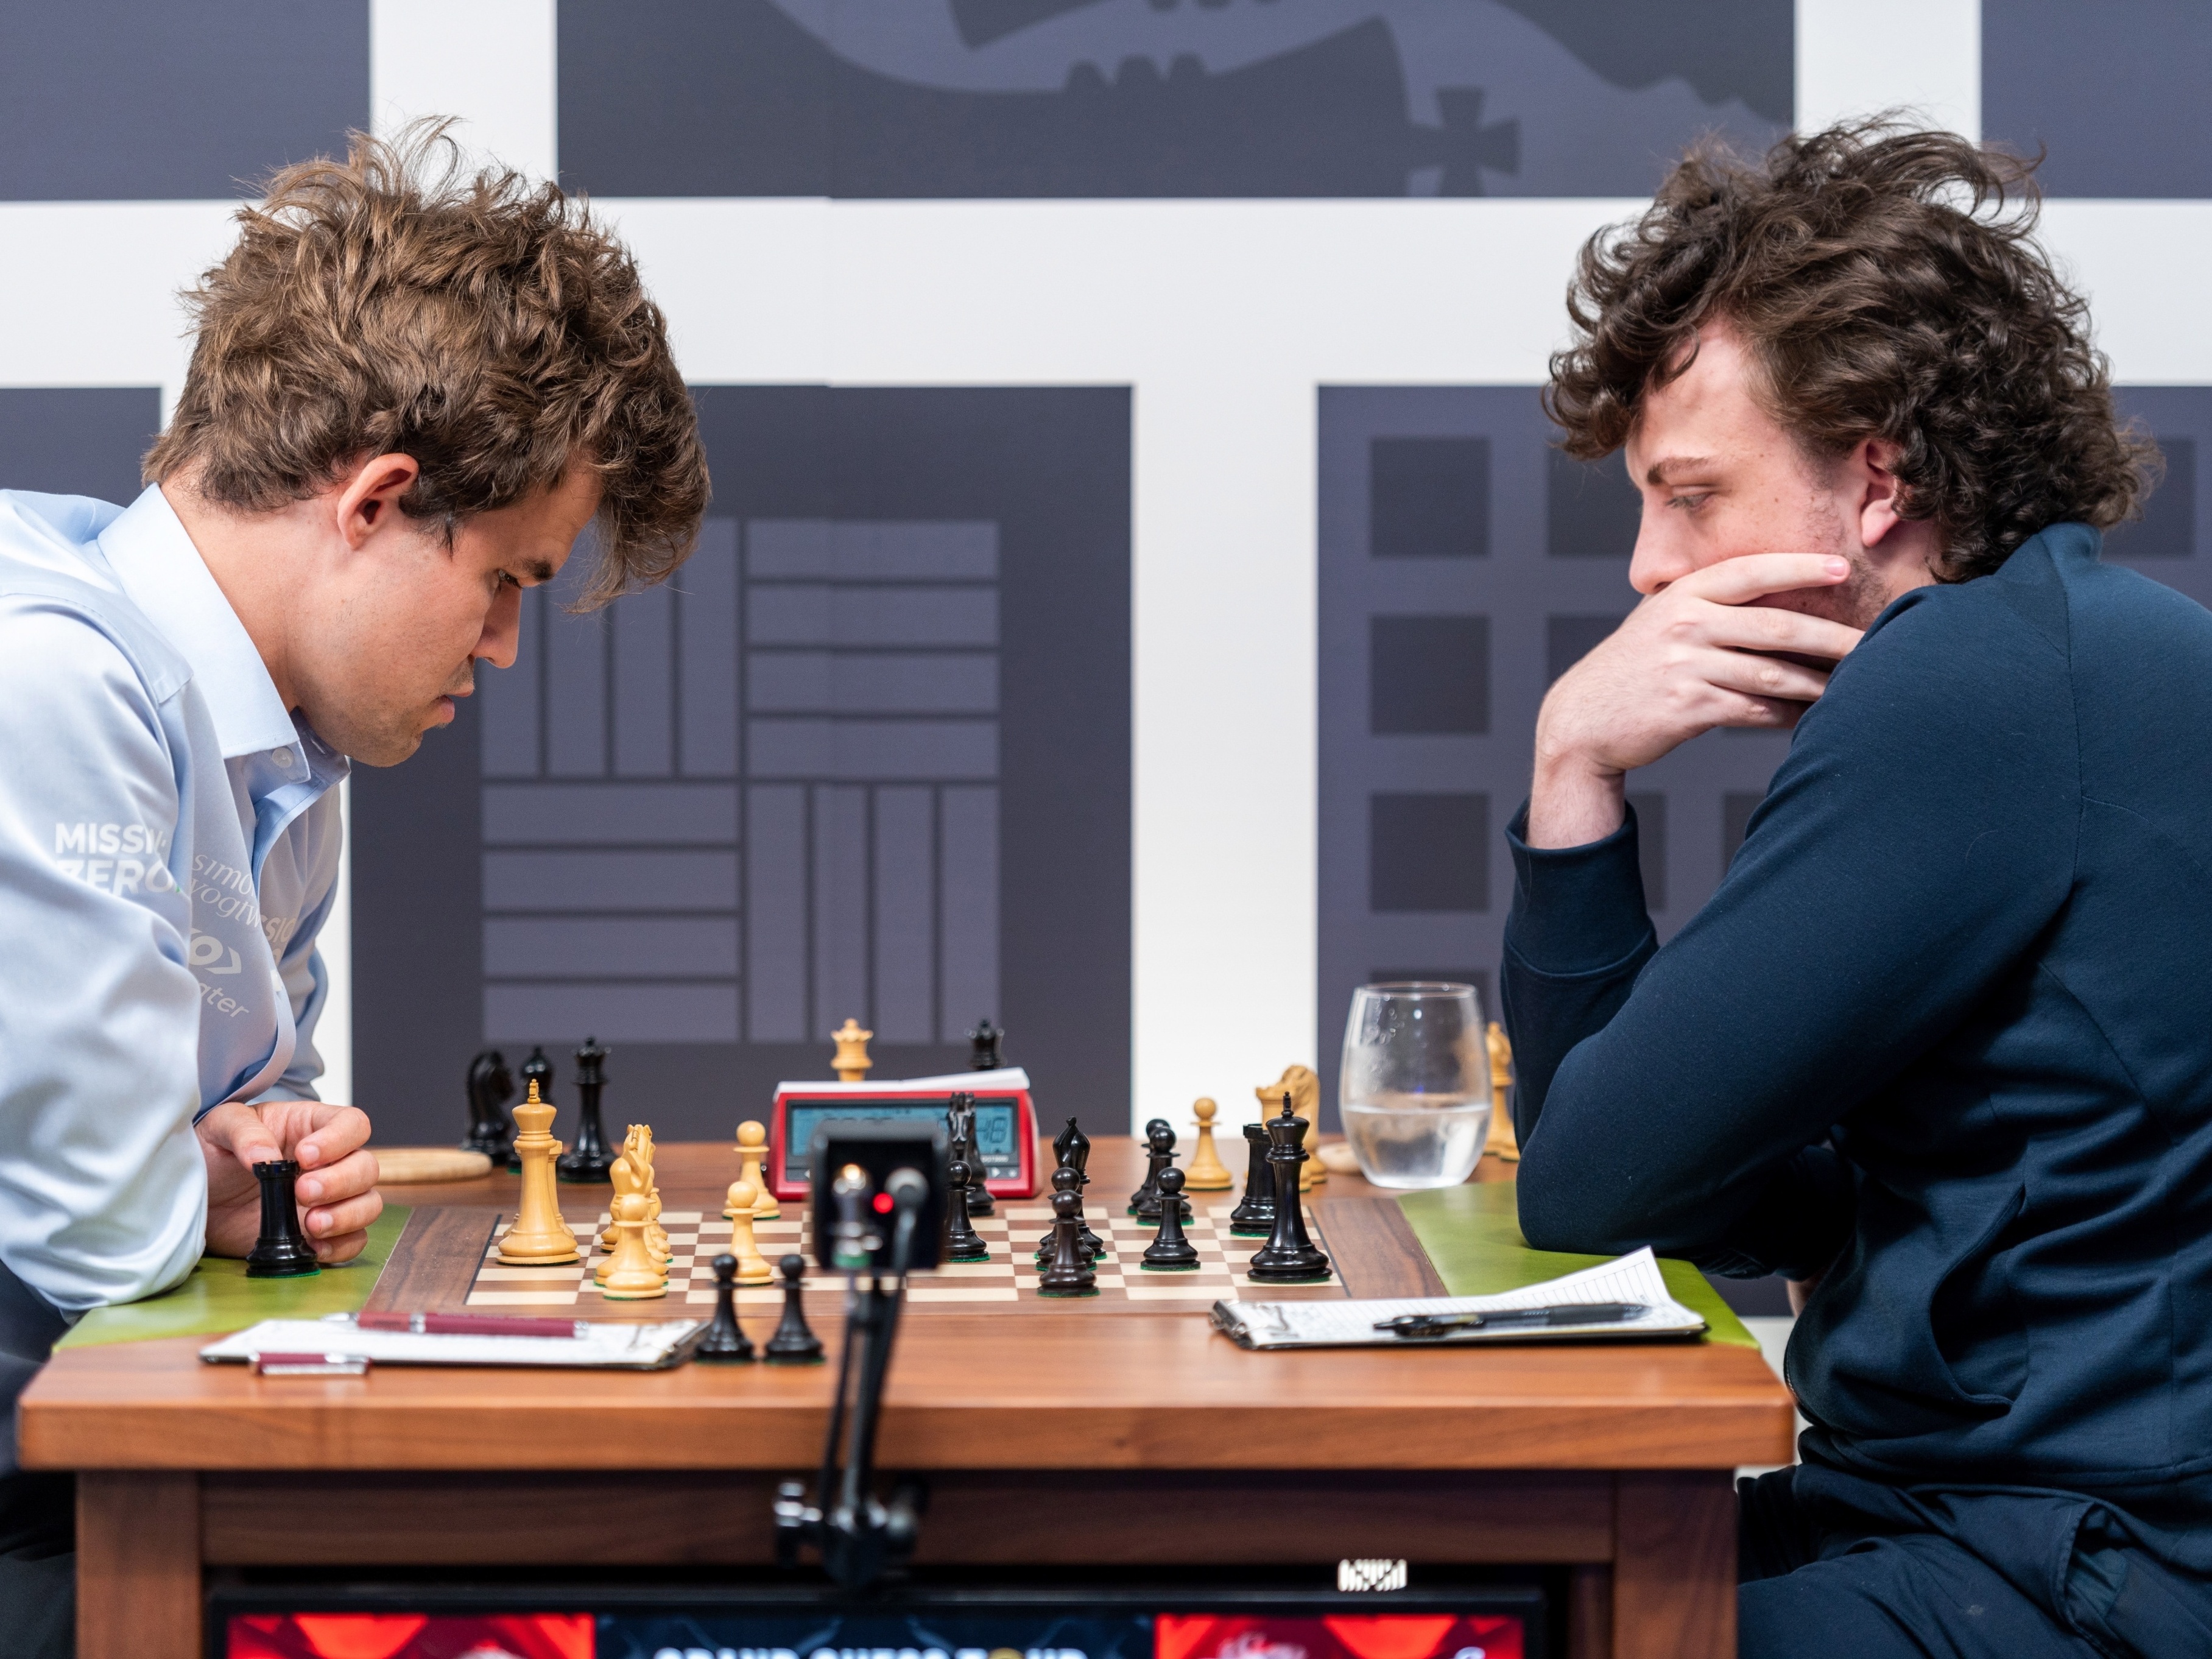 Magnus Carlsen ganha o primeiro troféu NFT no xadrez internacional